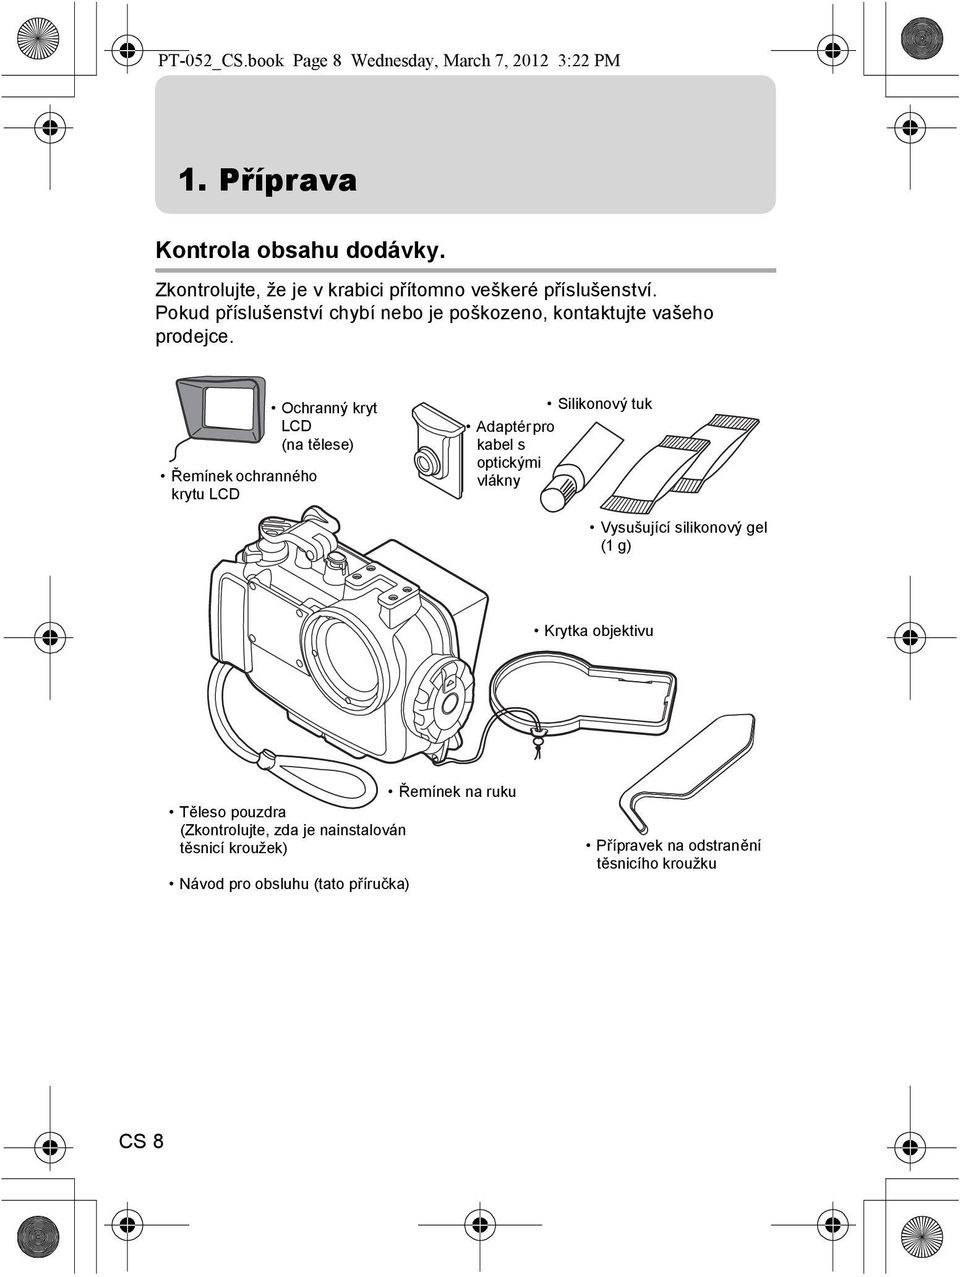 Řemínek ochranného krytu LCD Ochranný kryt LCD (na tělese) Silikonový tuk Adaptér pro kabel s optickými vlákny Vysušující silikonový gel